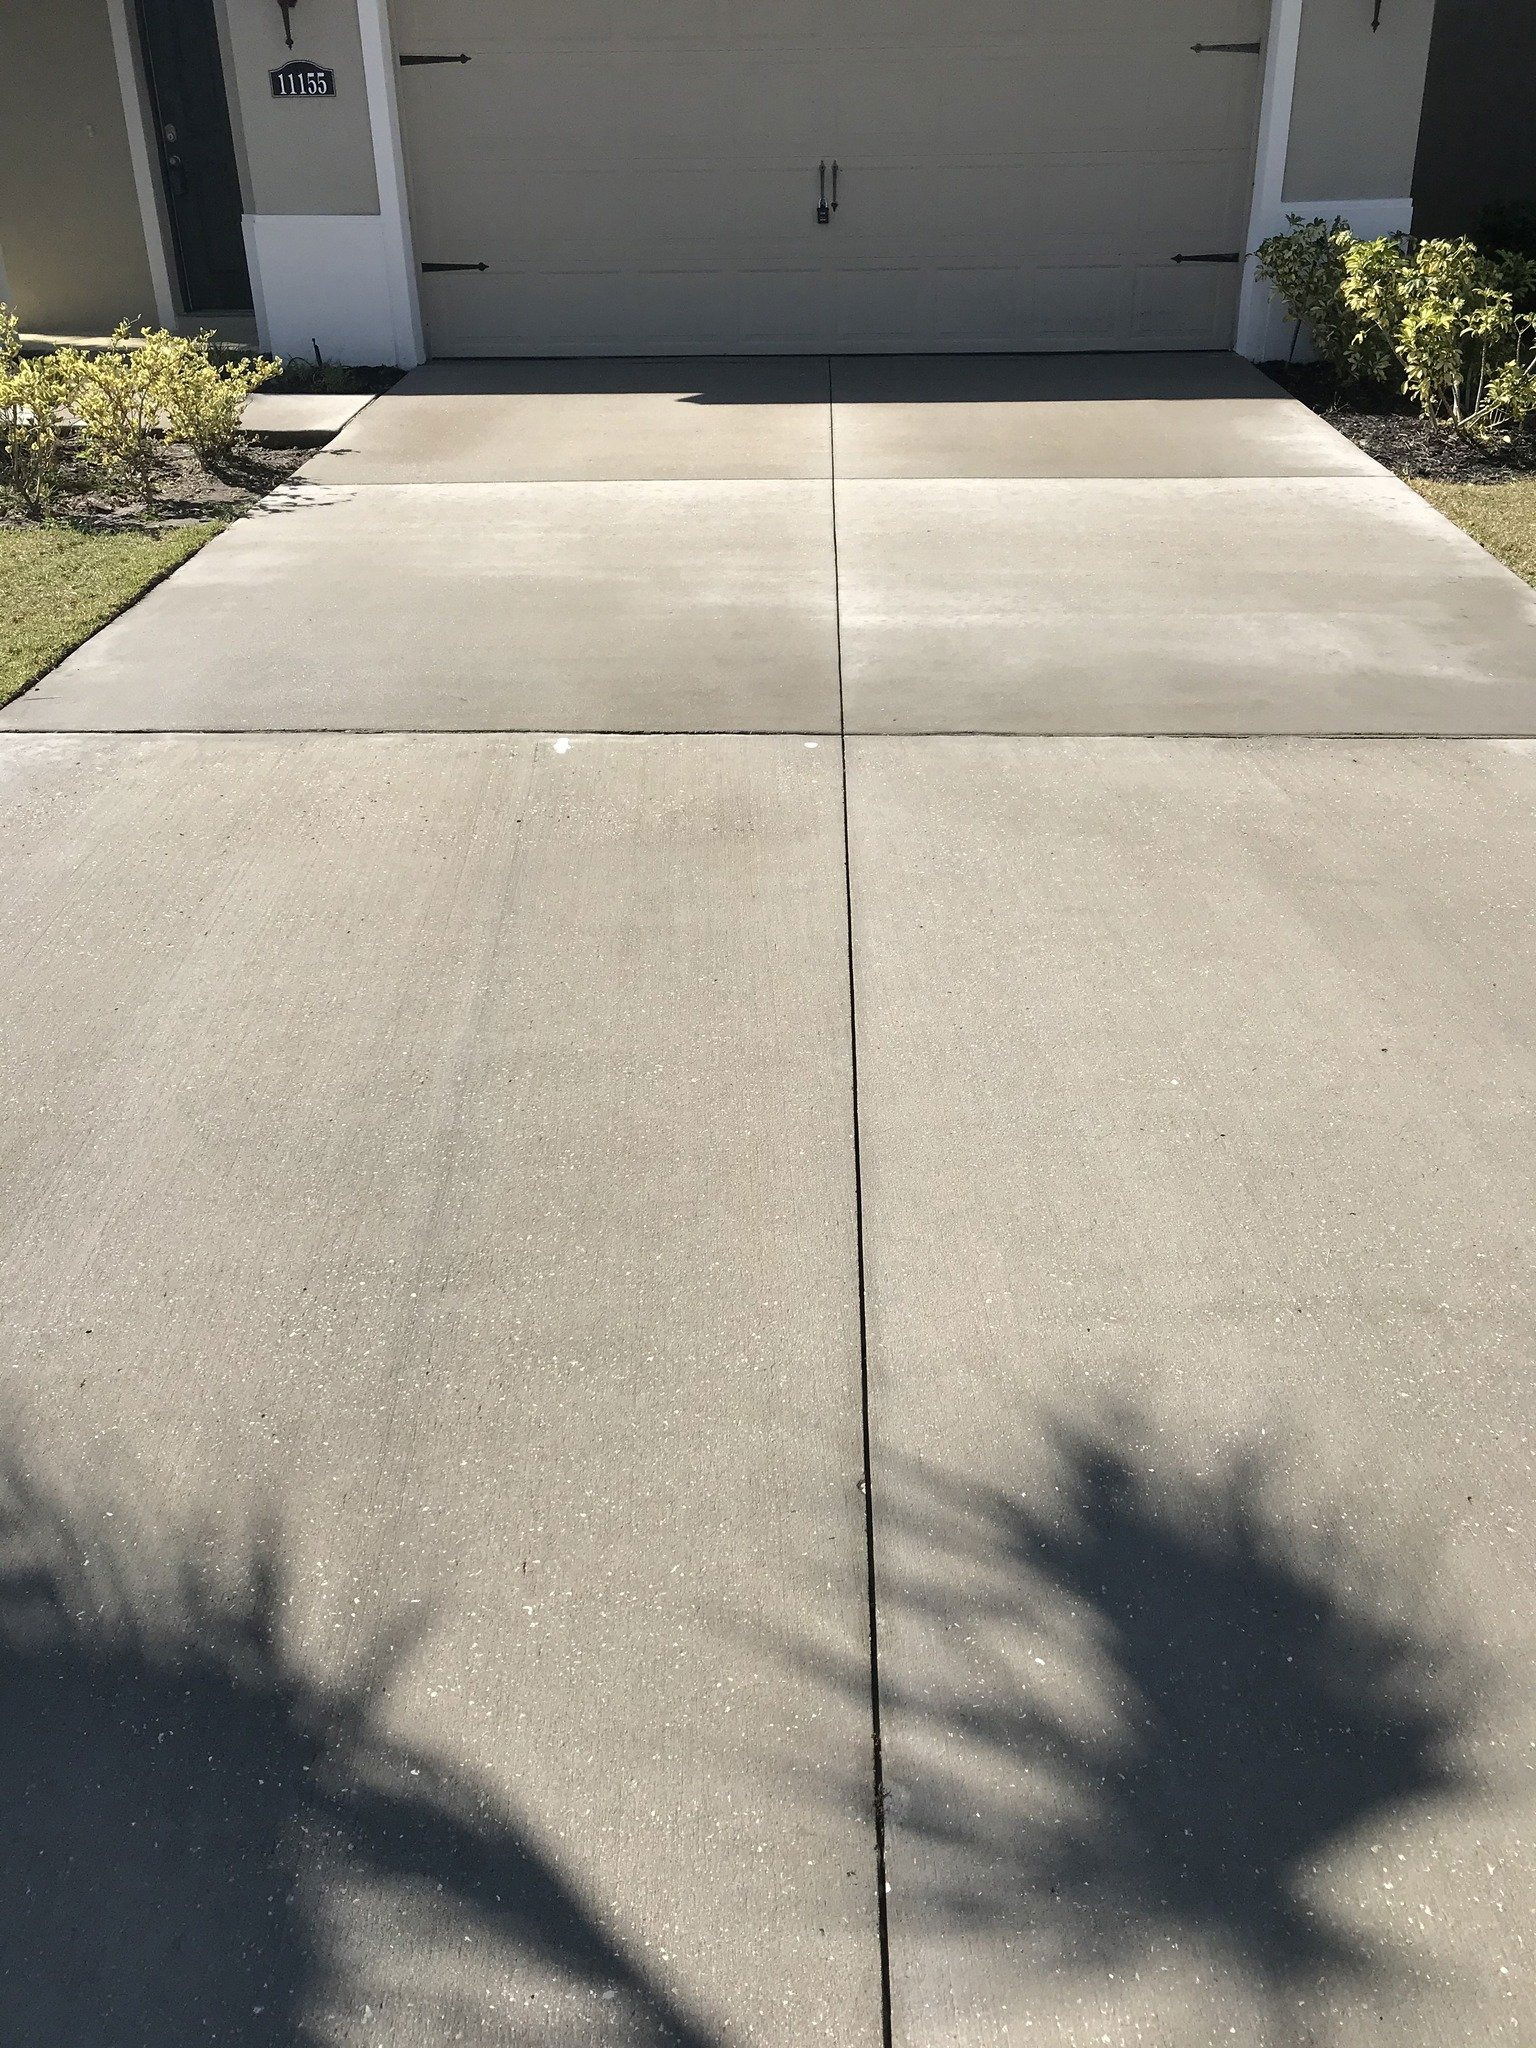 New Concrete Driveway